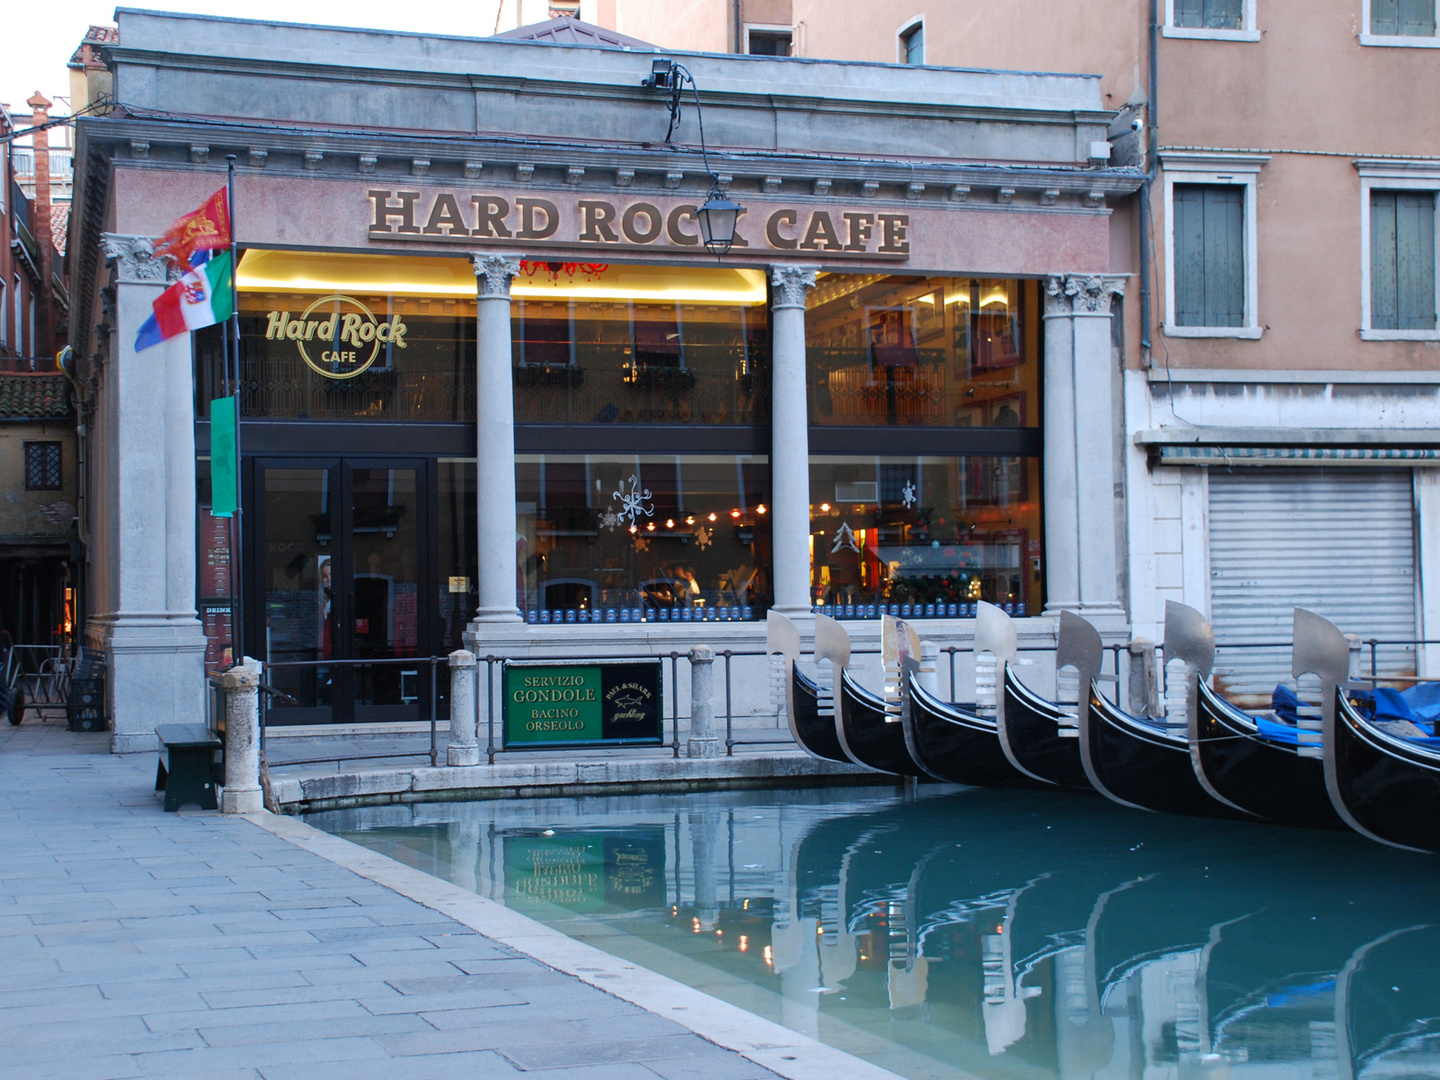 Da is kein Platz für Harleys in Venedig